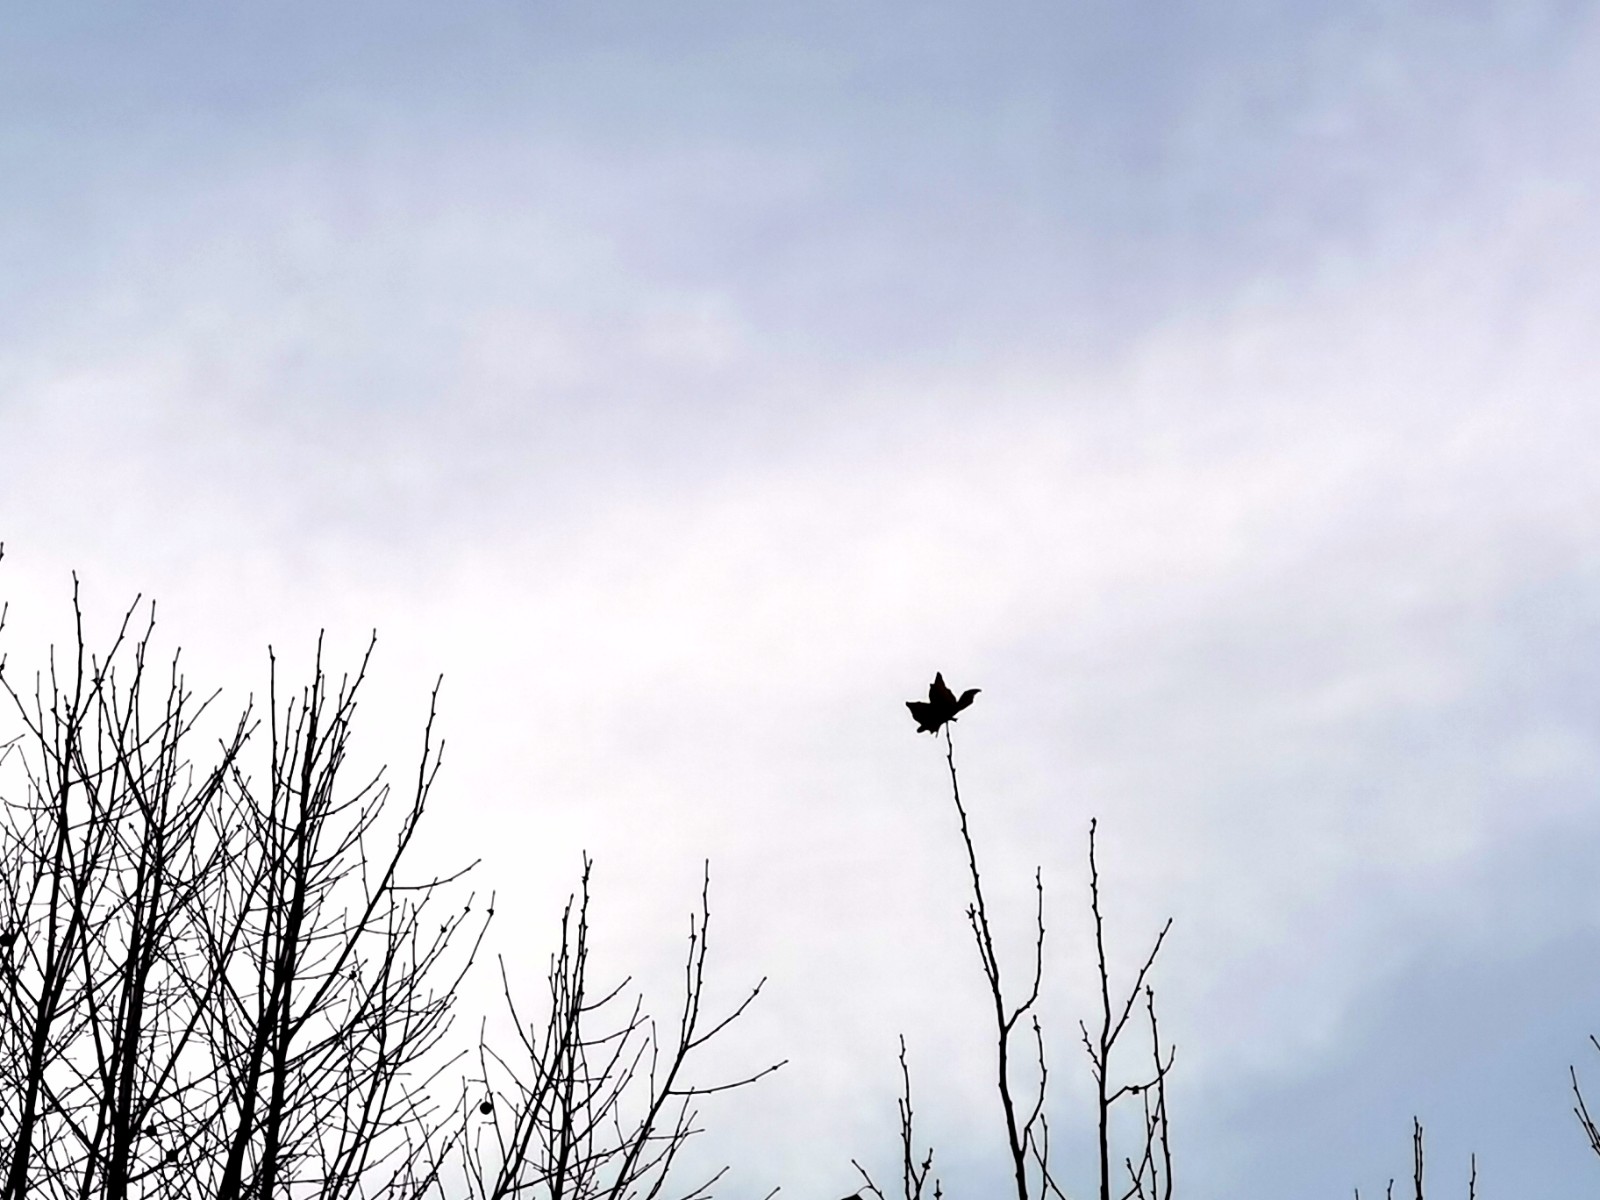 展翅飞越冬天——山东大学中心校区，光秃秃的梧桐树上留下一片叶子，像展翅飞翔的鸟儿，它是想要飞越冬天吧。 甘传昀 山东大学文学院